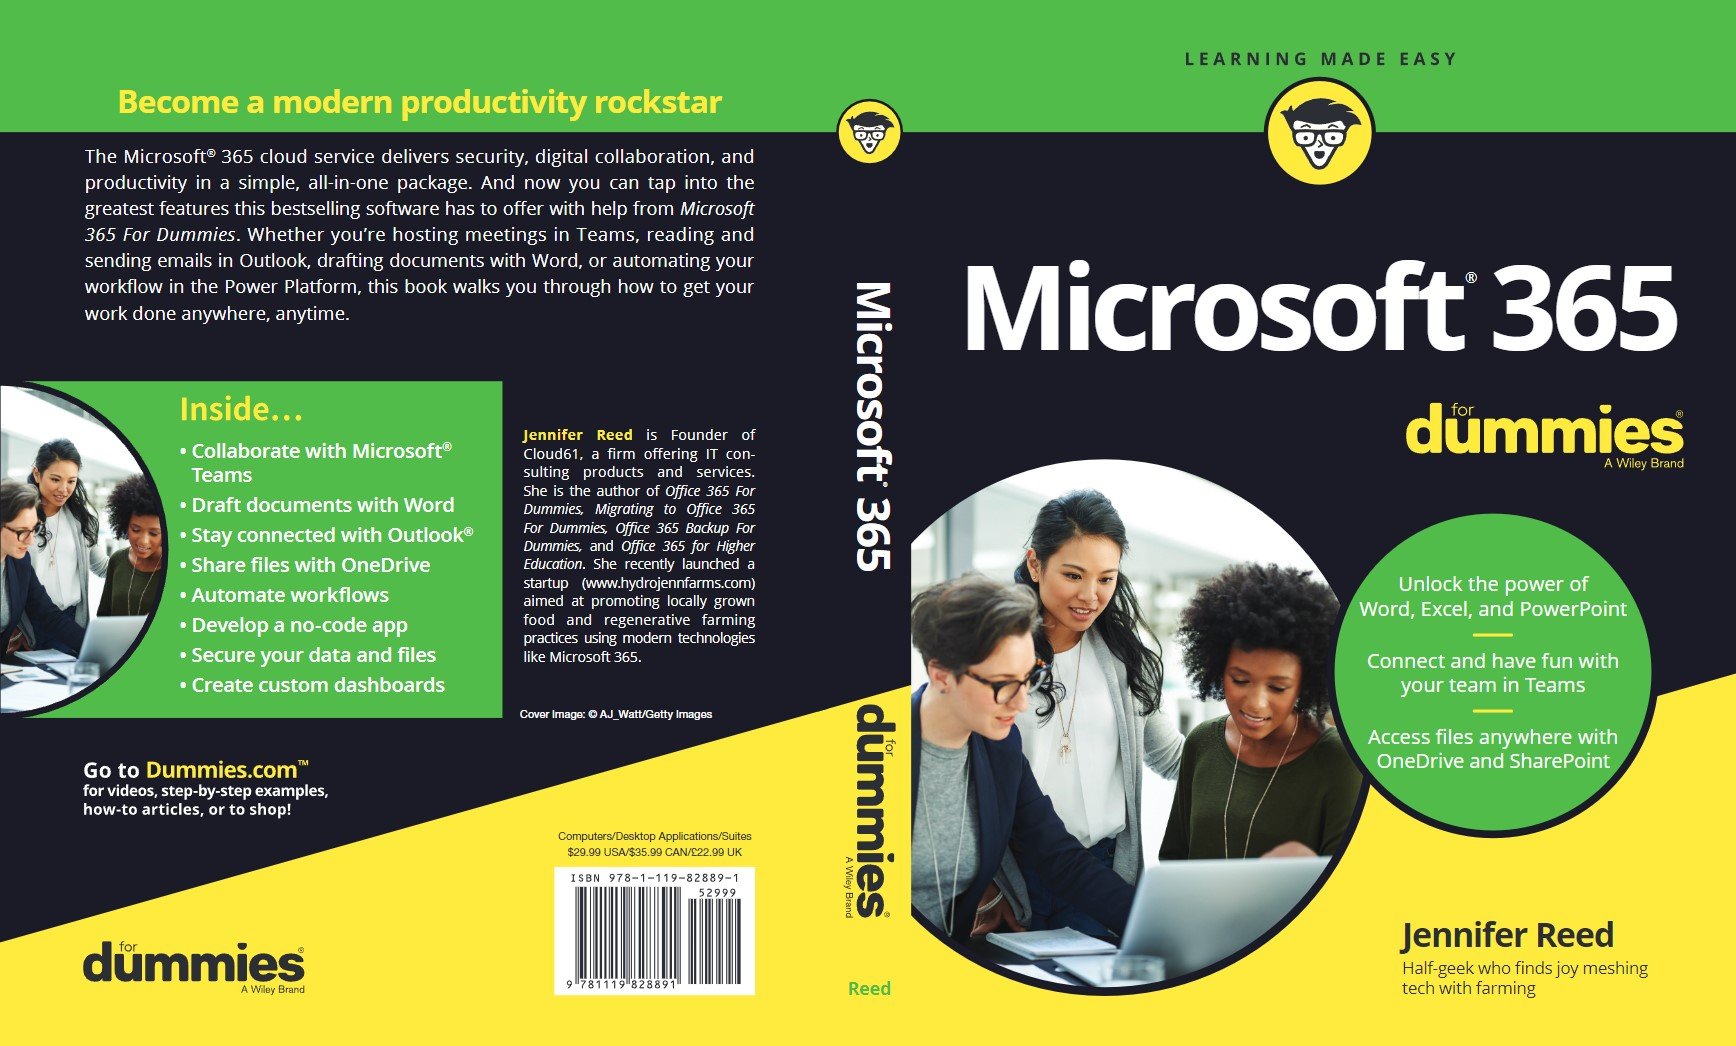 tradepub.com | Descarcați Gratuit manualul Microsoft 365 For Dummies 1